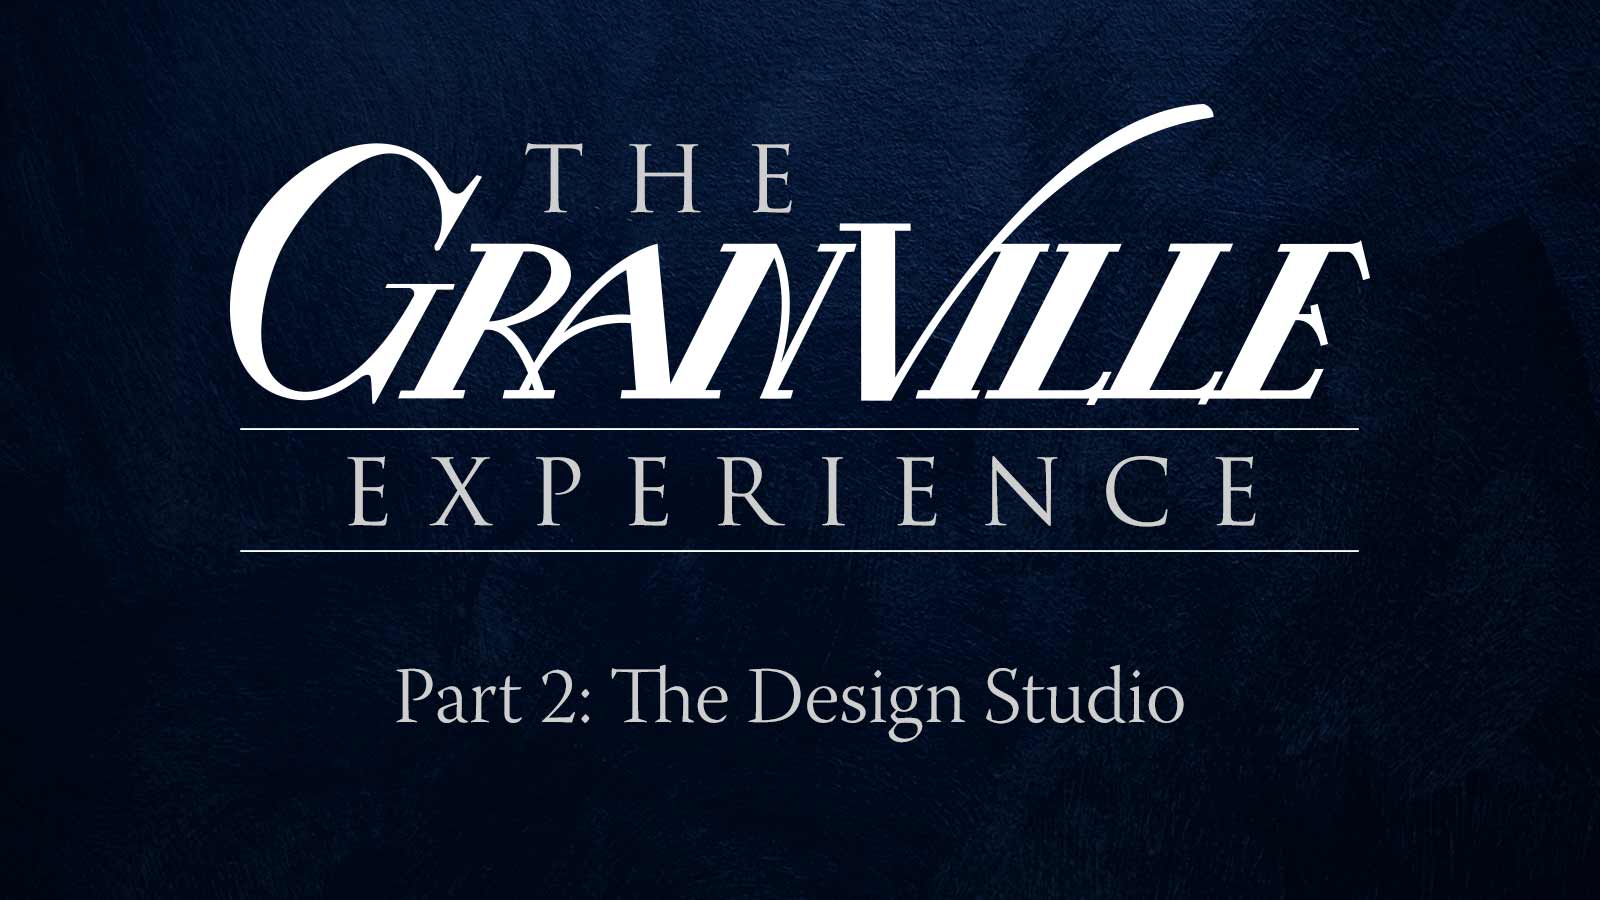 Part 2: The Design Studio